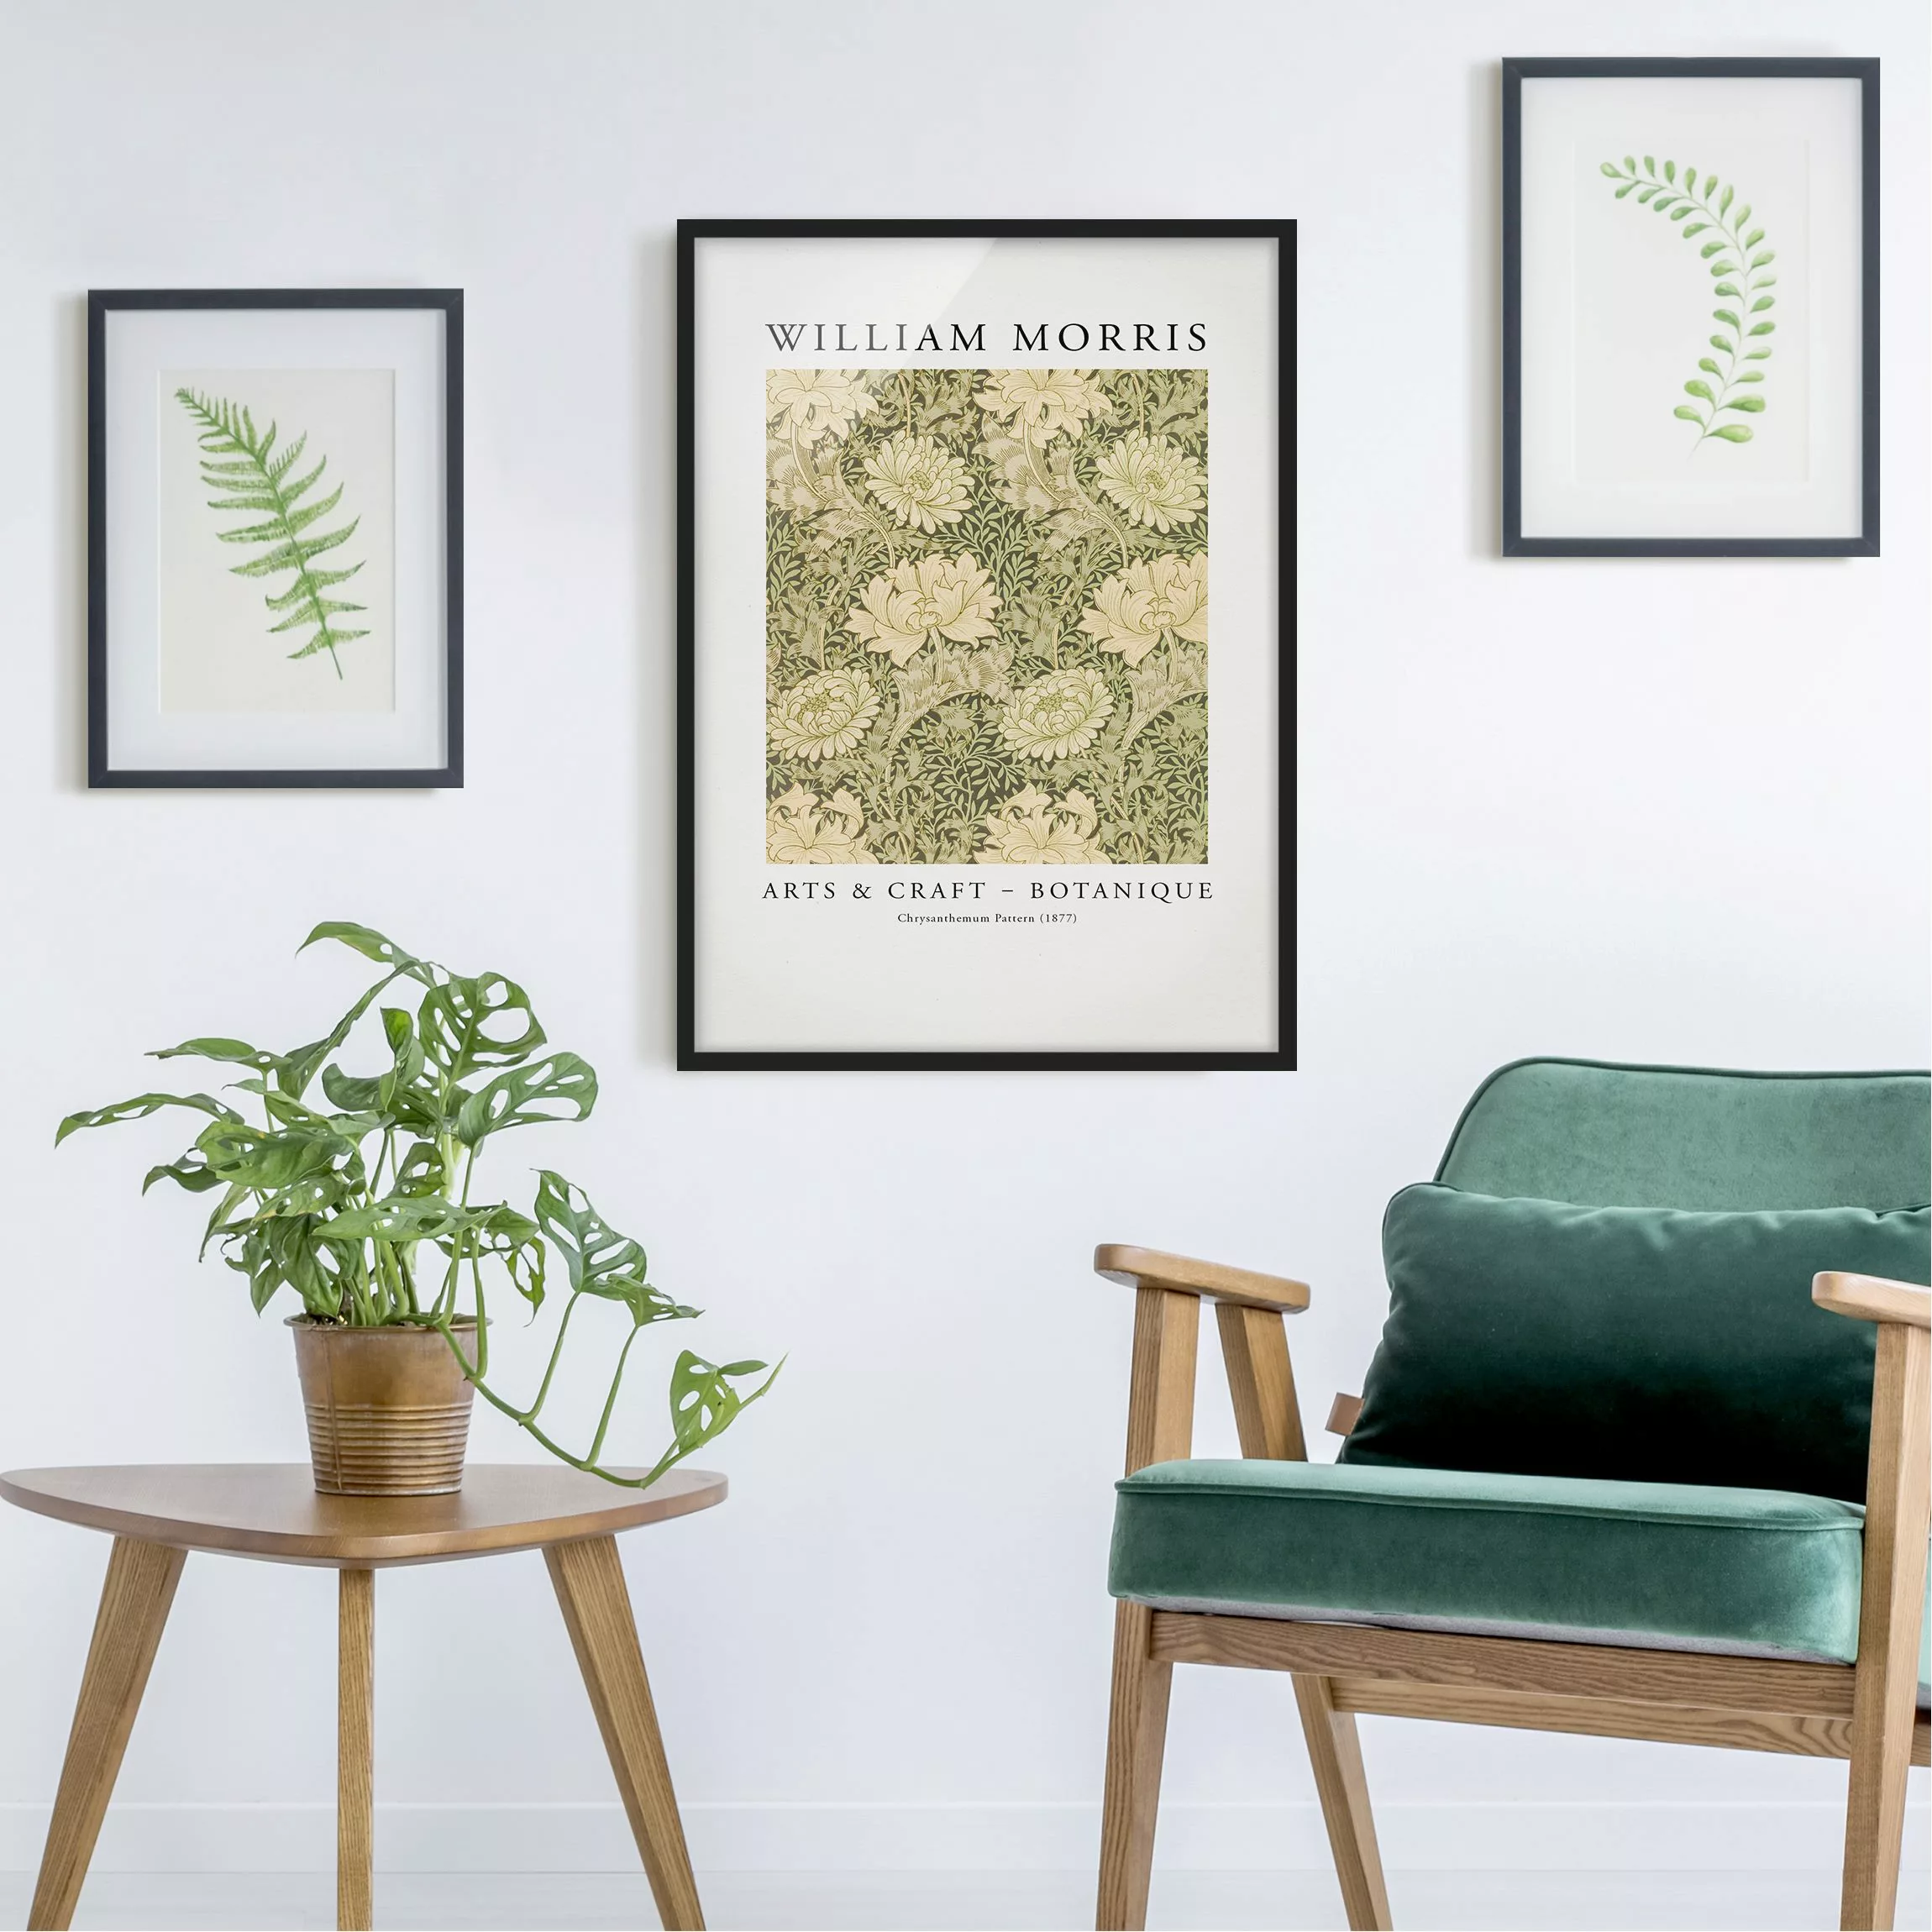 Bild mit Rahmen William Morris - Chrysanthemum Pattern günstig online kaufen